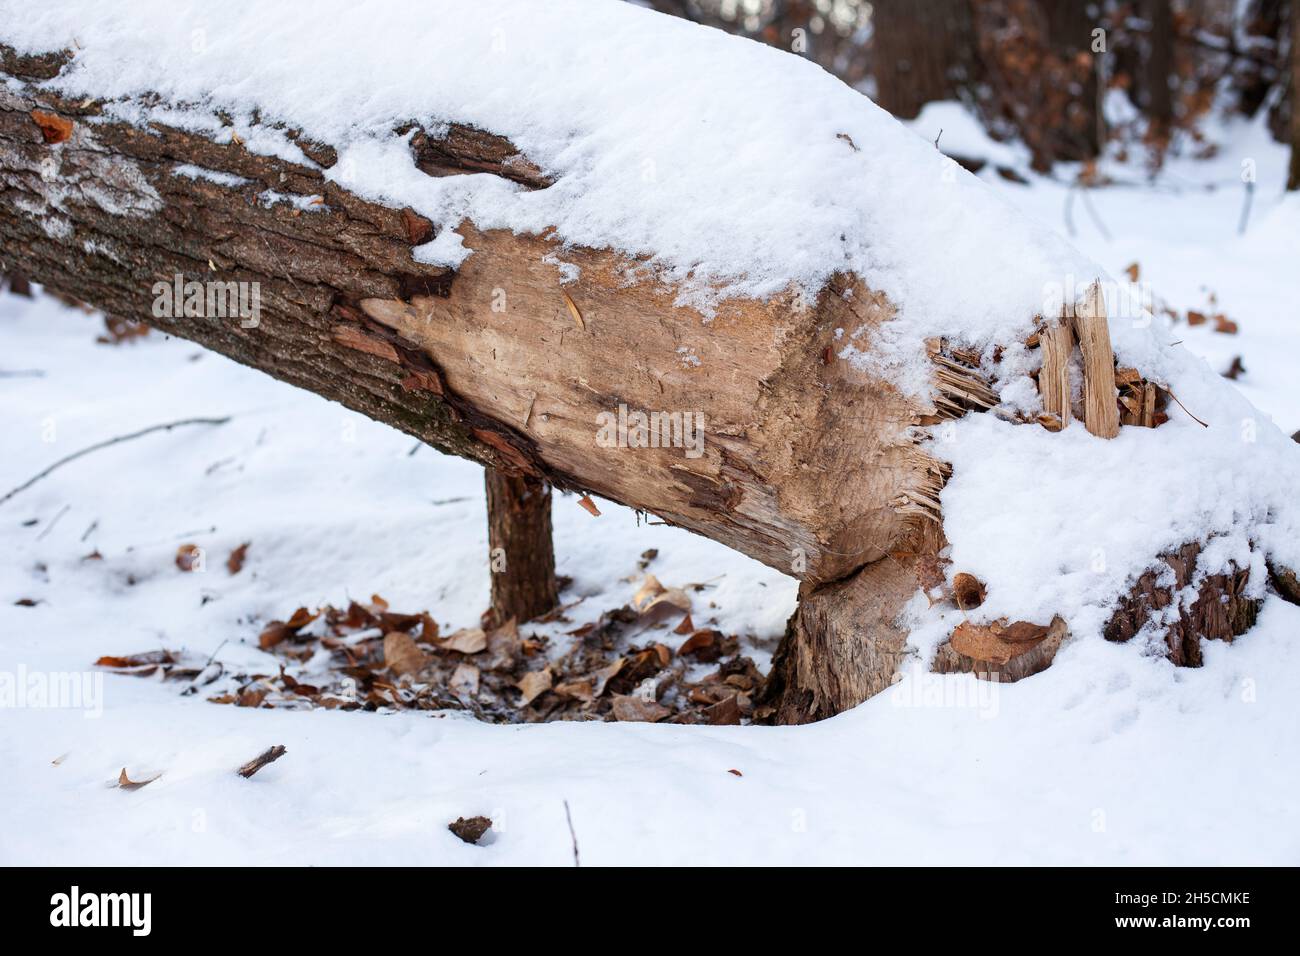 Gros plan de l'arbre dans la forêt d'hiver.Tronc d'un vieux arbre à feuilles caduques avec des marques de dents de castor est tombé au sol, le bois est couvert de neige après une tempête de neige intense Banque D'Images